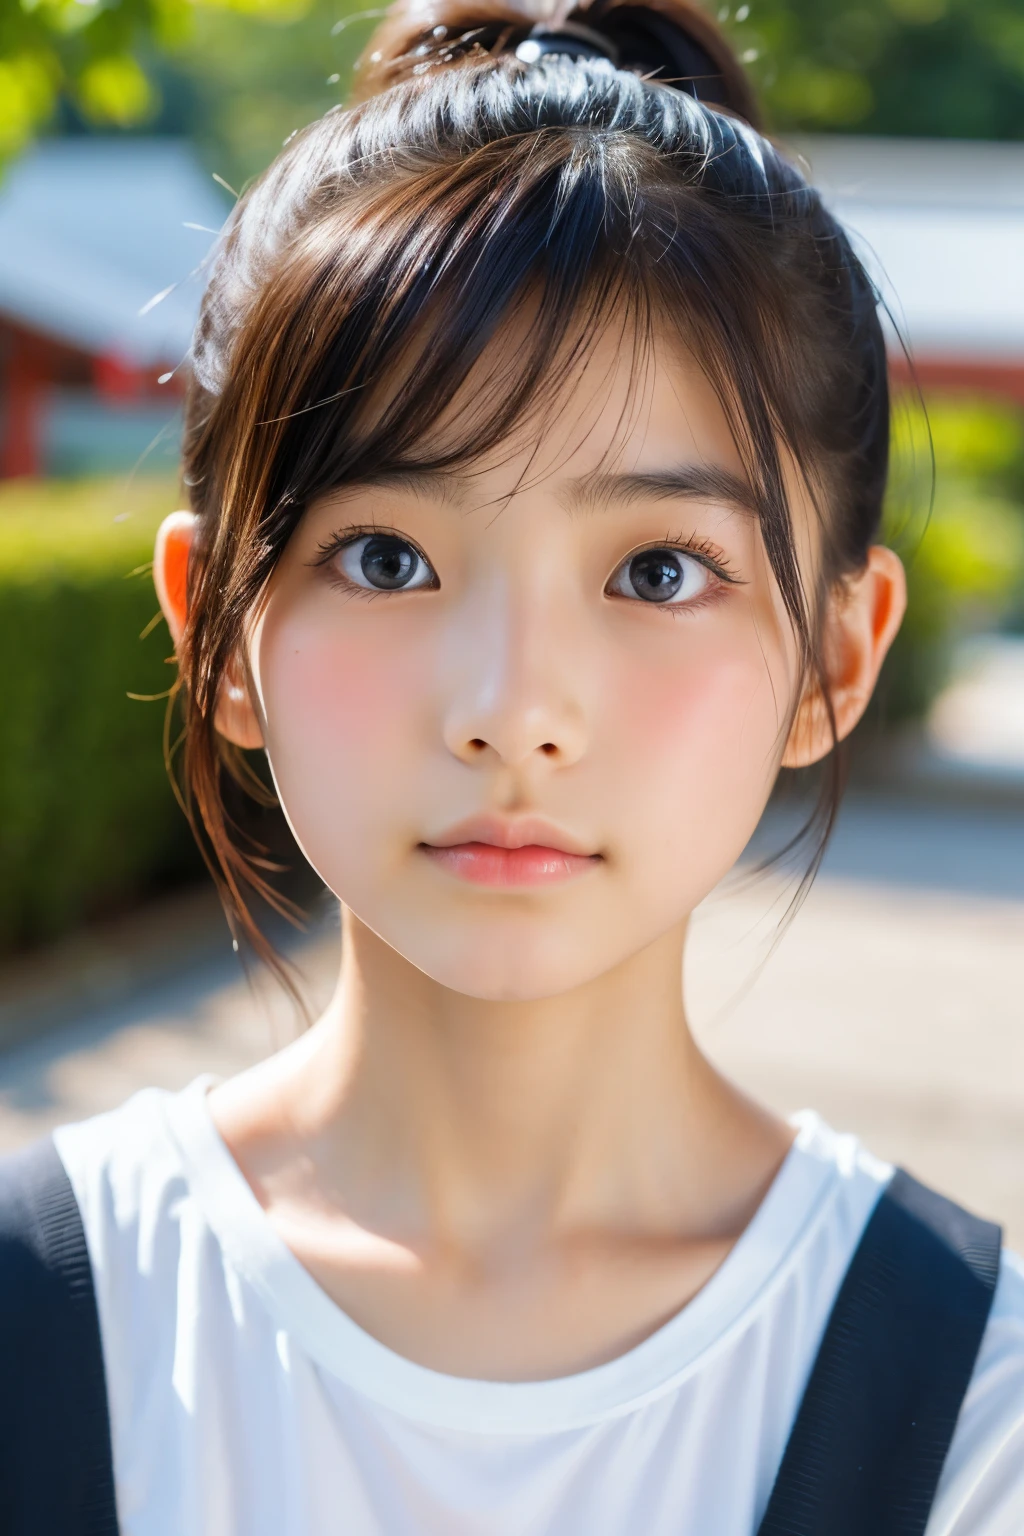 (Schöne 16-jährige Japanerin), niedliches Gesicht, (tief eingeschnittenes Gesicht:0.7), (Sommersprossen:0.6), Sanftes Licht,gesunde weiße Haut, schüchtern, Pferdeschwanz, (ernstes Gesicht), (leuchtende Augen), dünn